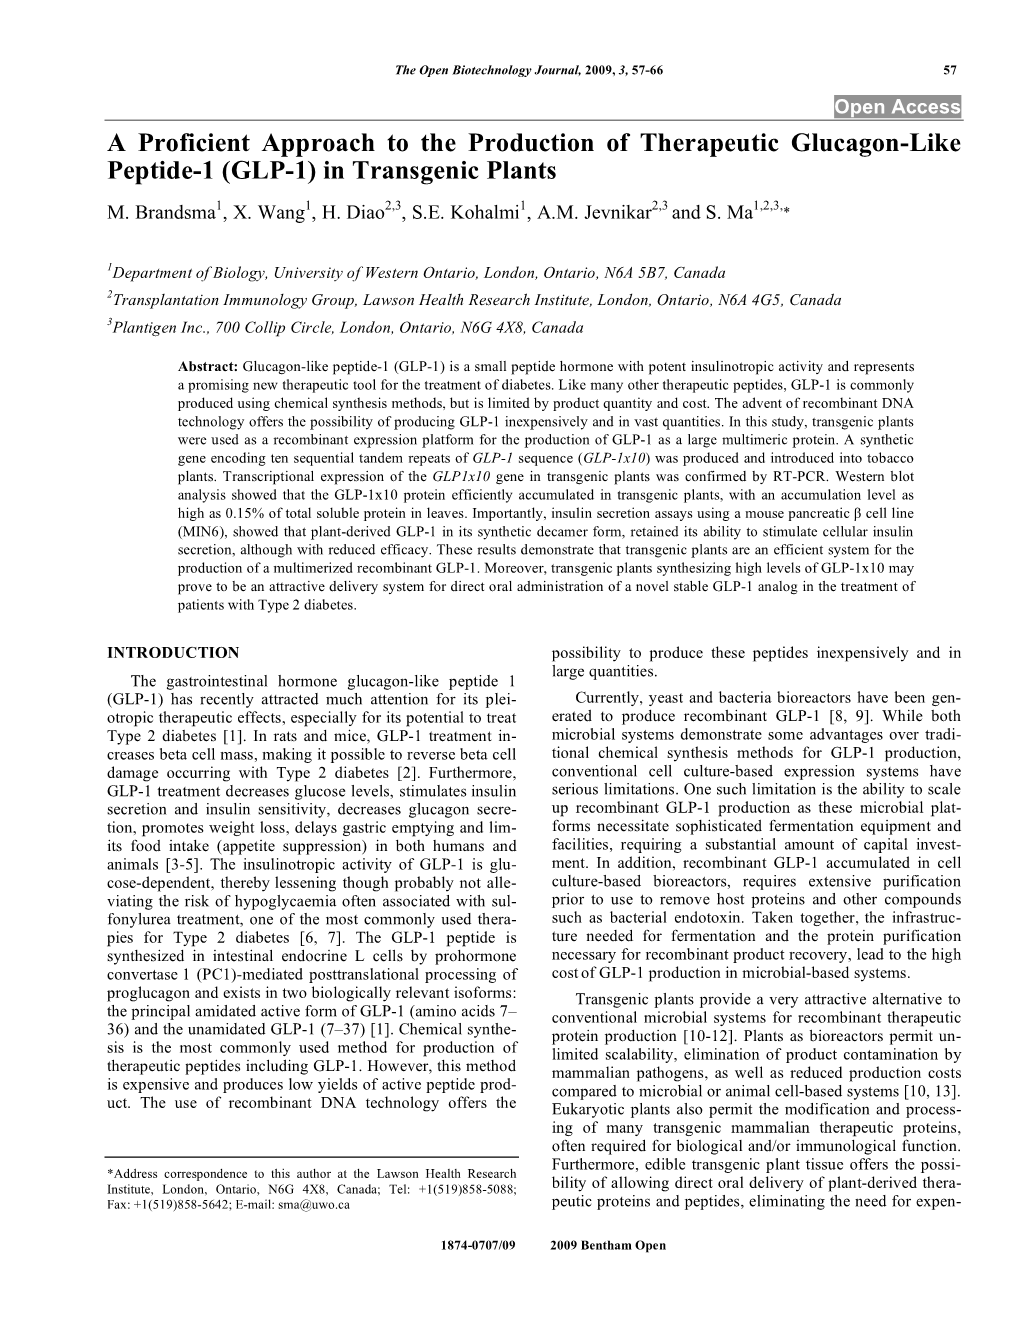 (GLP-1) in Transgenic Plants